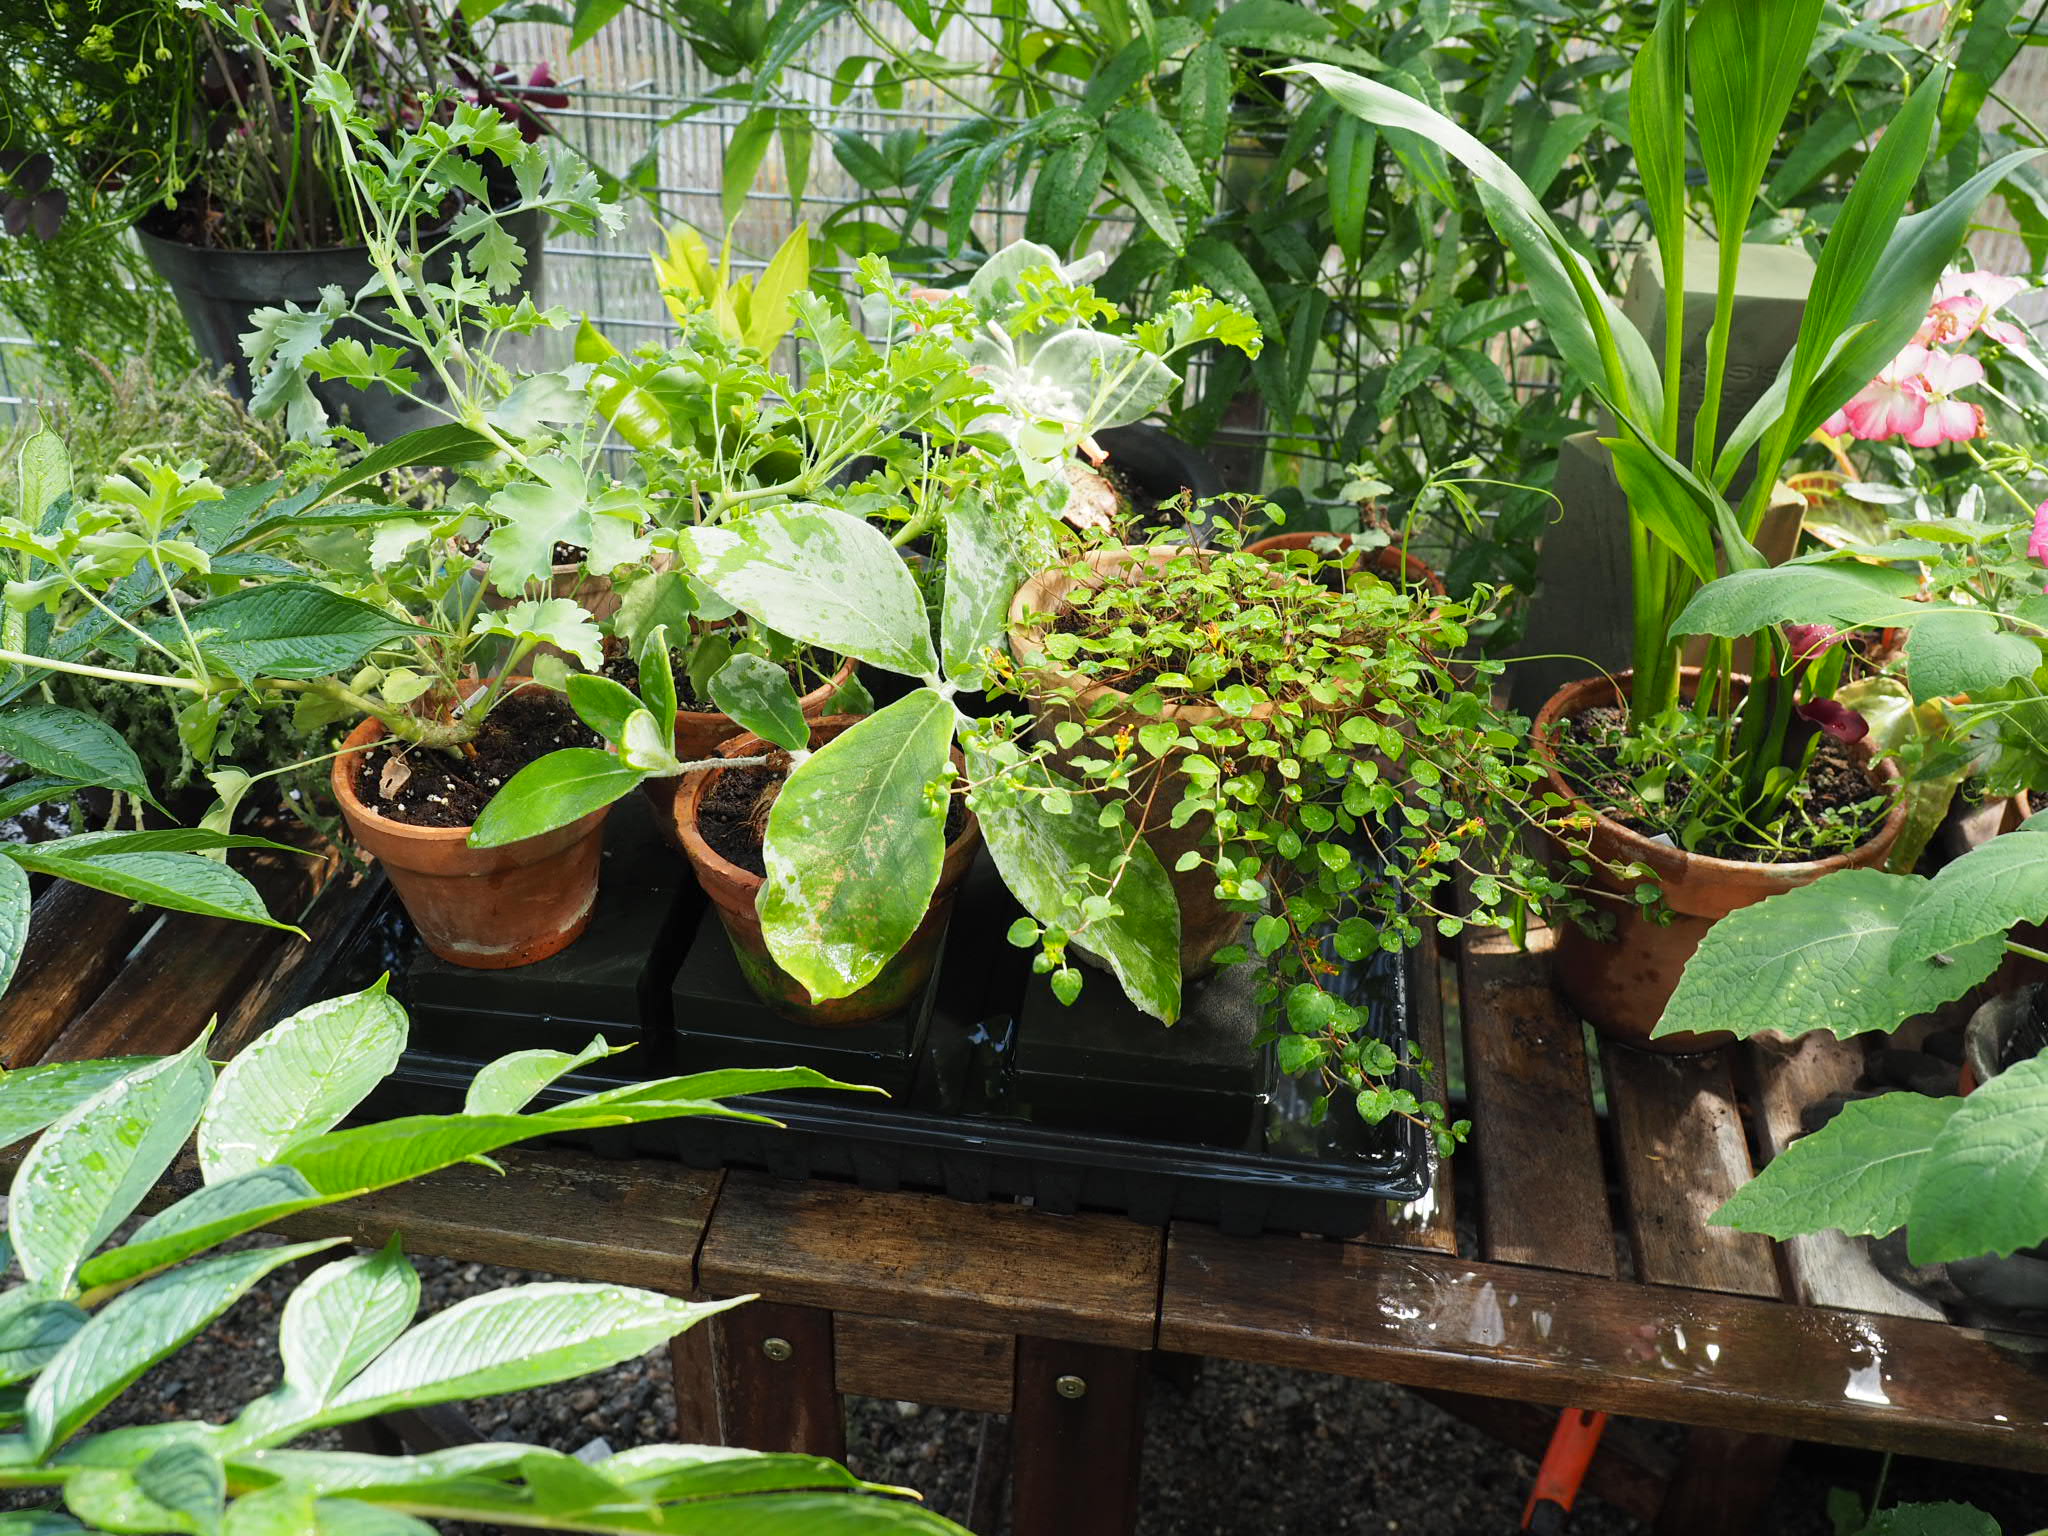 Ferievanning av potteplanter både inne og ute med «selvvanning».